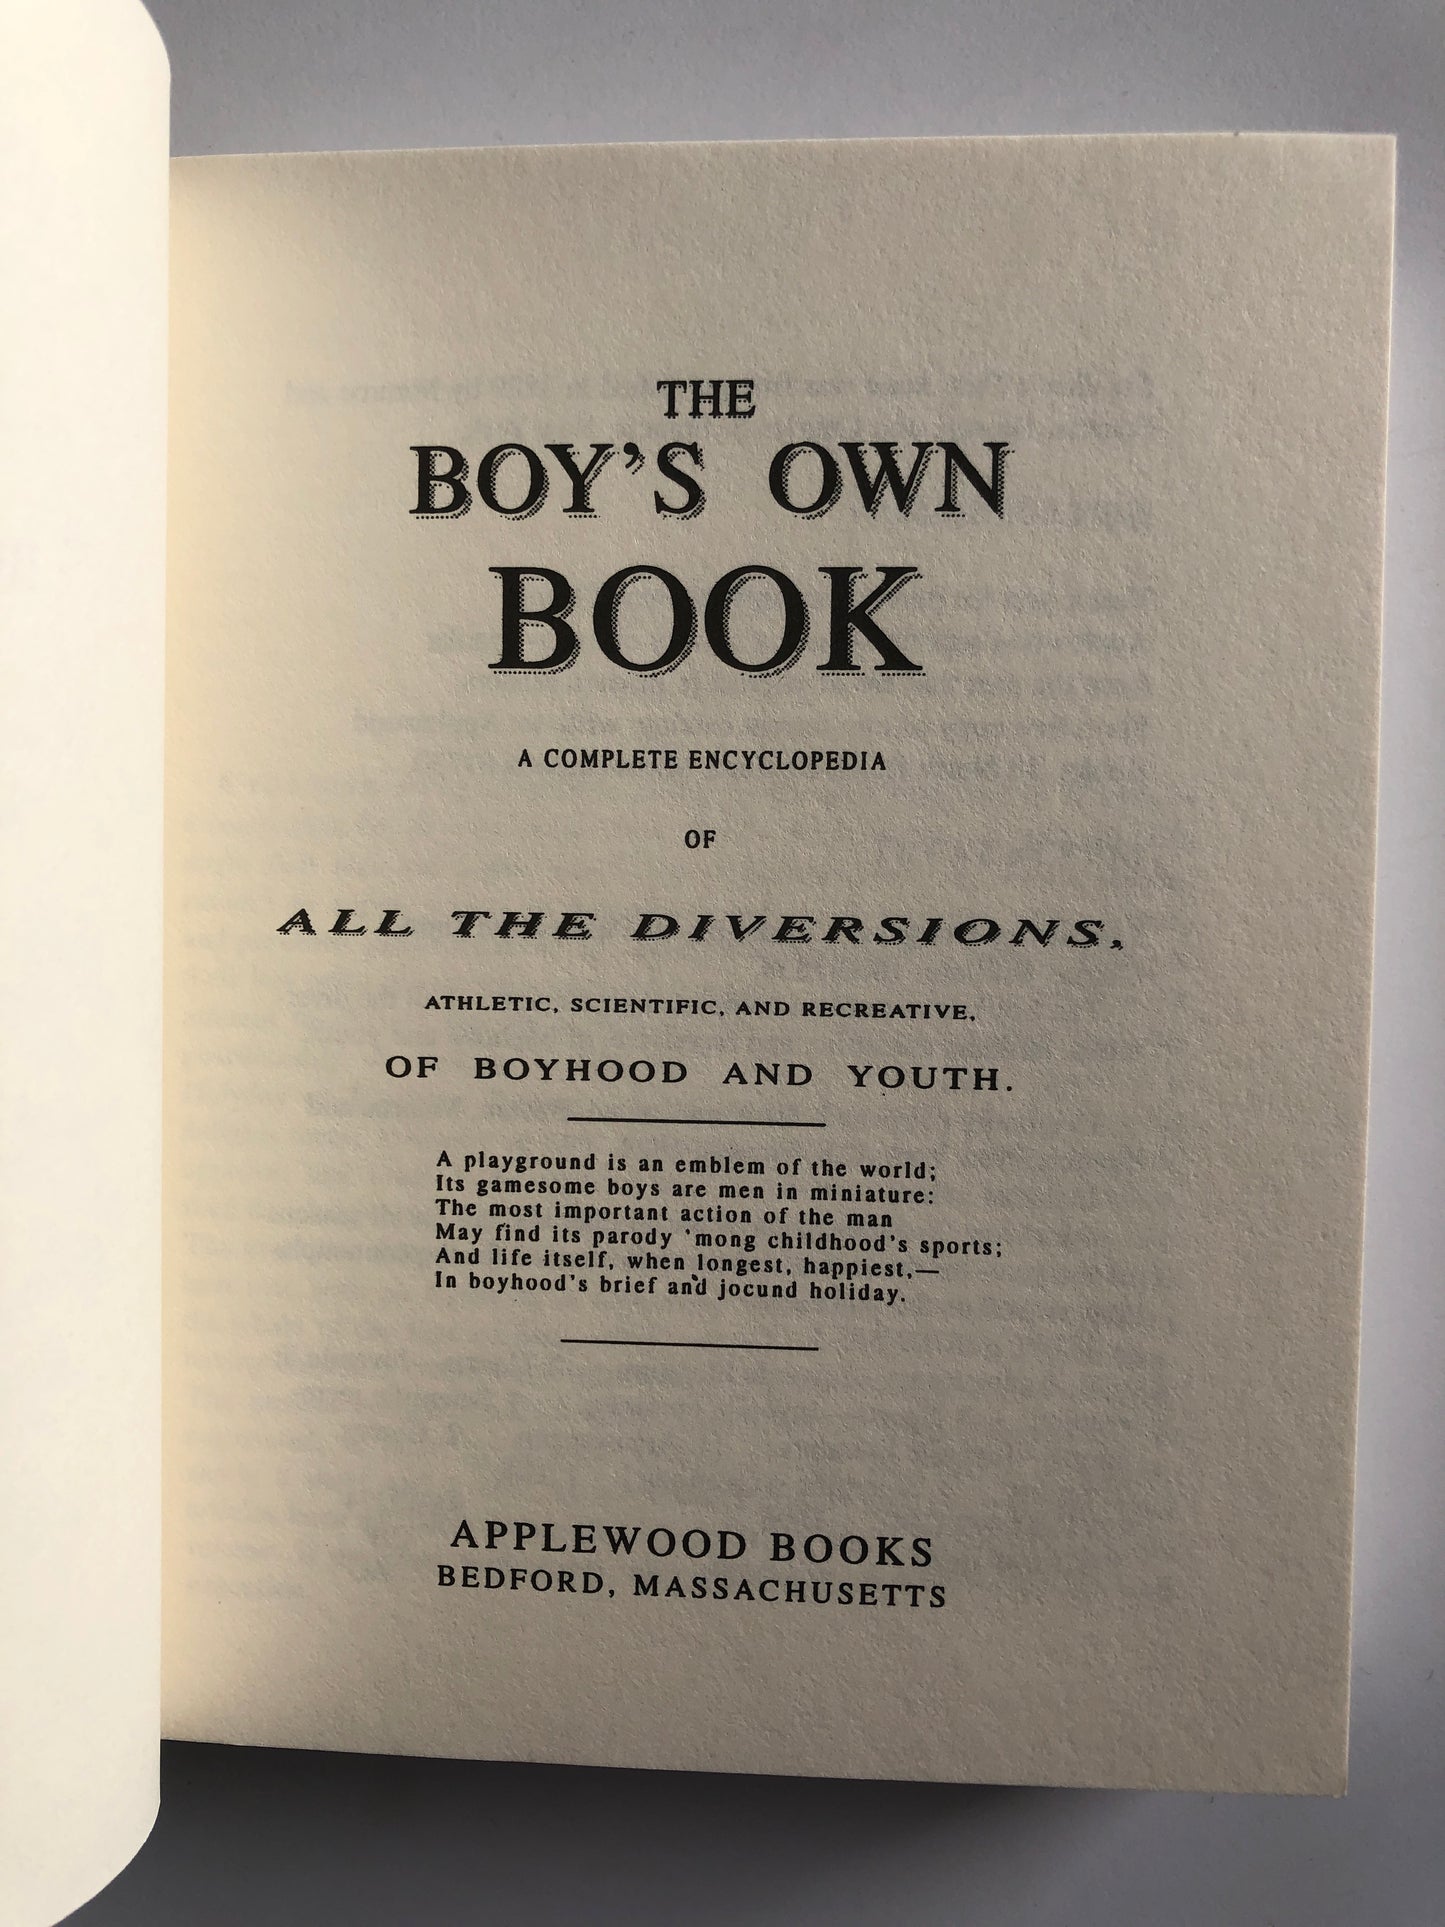 The Boy's Own Book - William Clarke